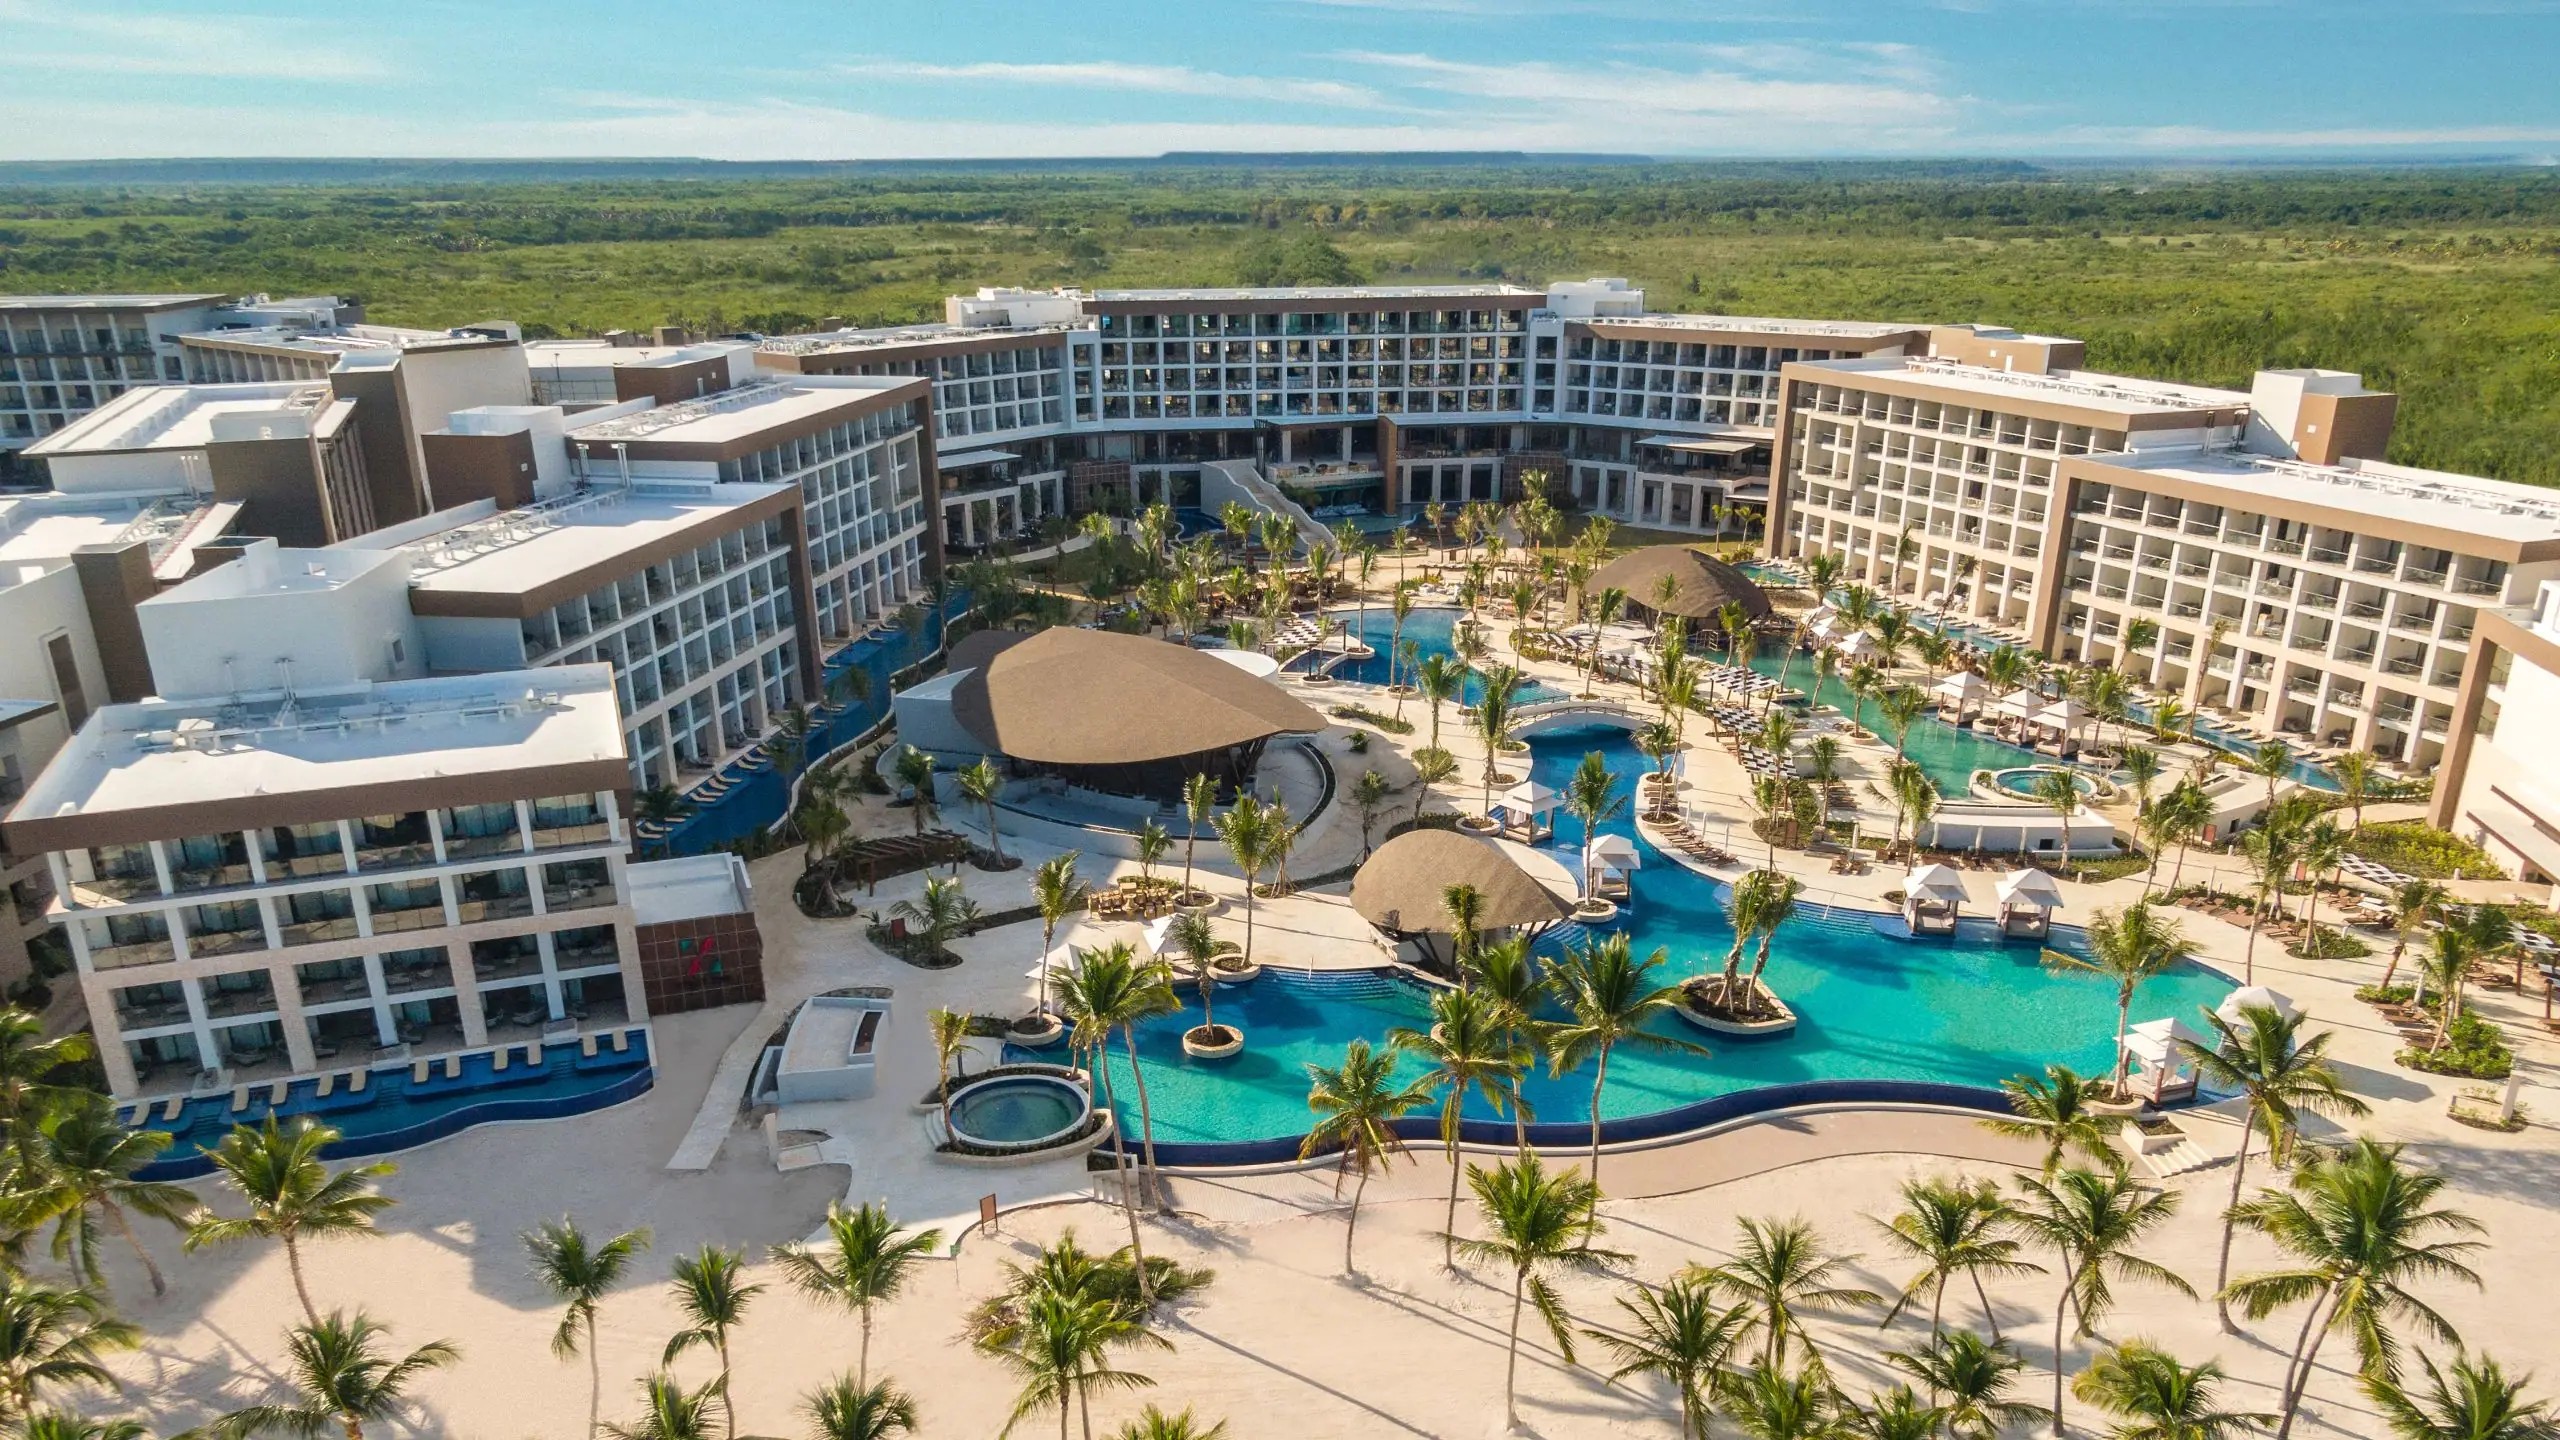 Hyatt agregará 1,000 habitaciones en República Dominicana con dos nuevos hoteles